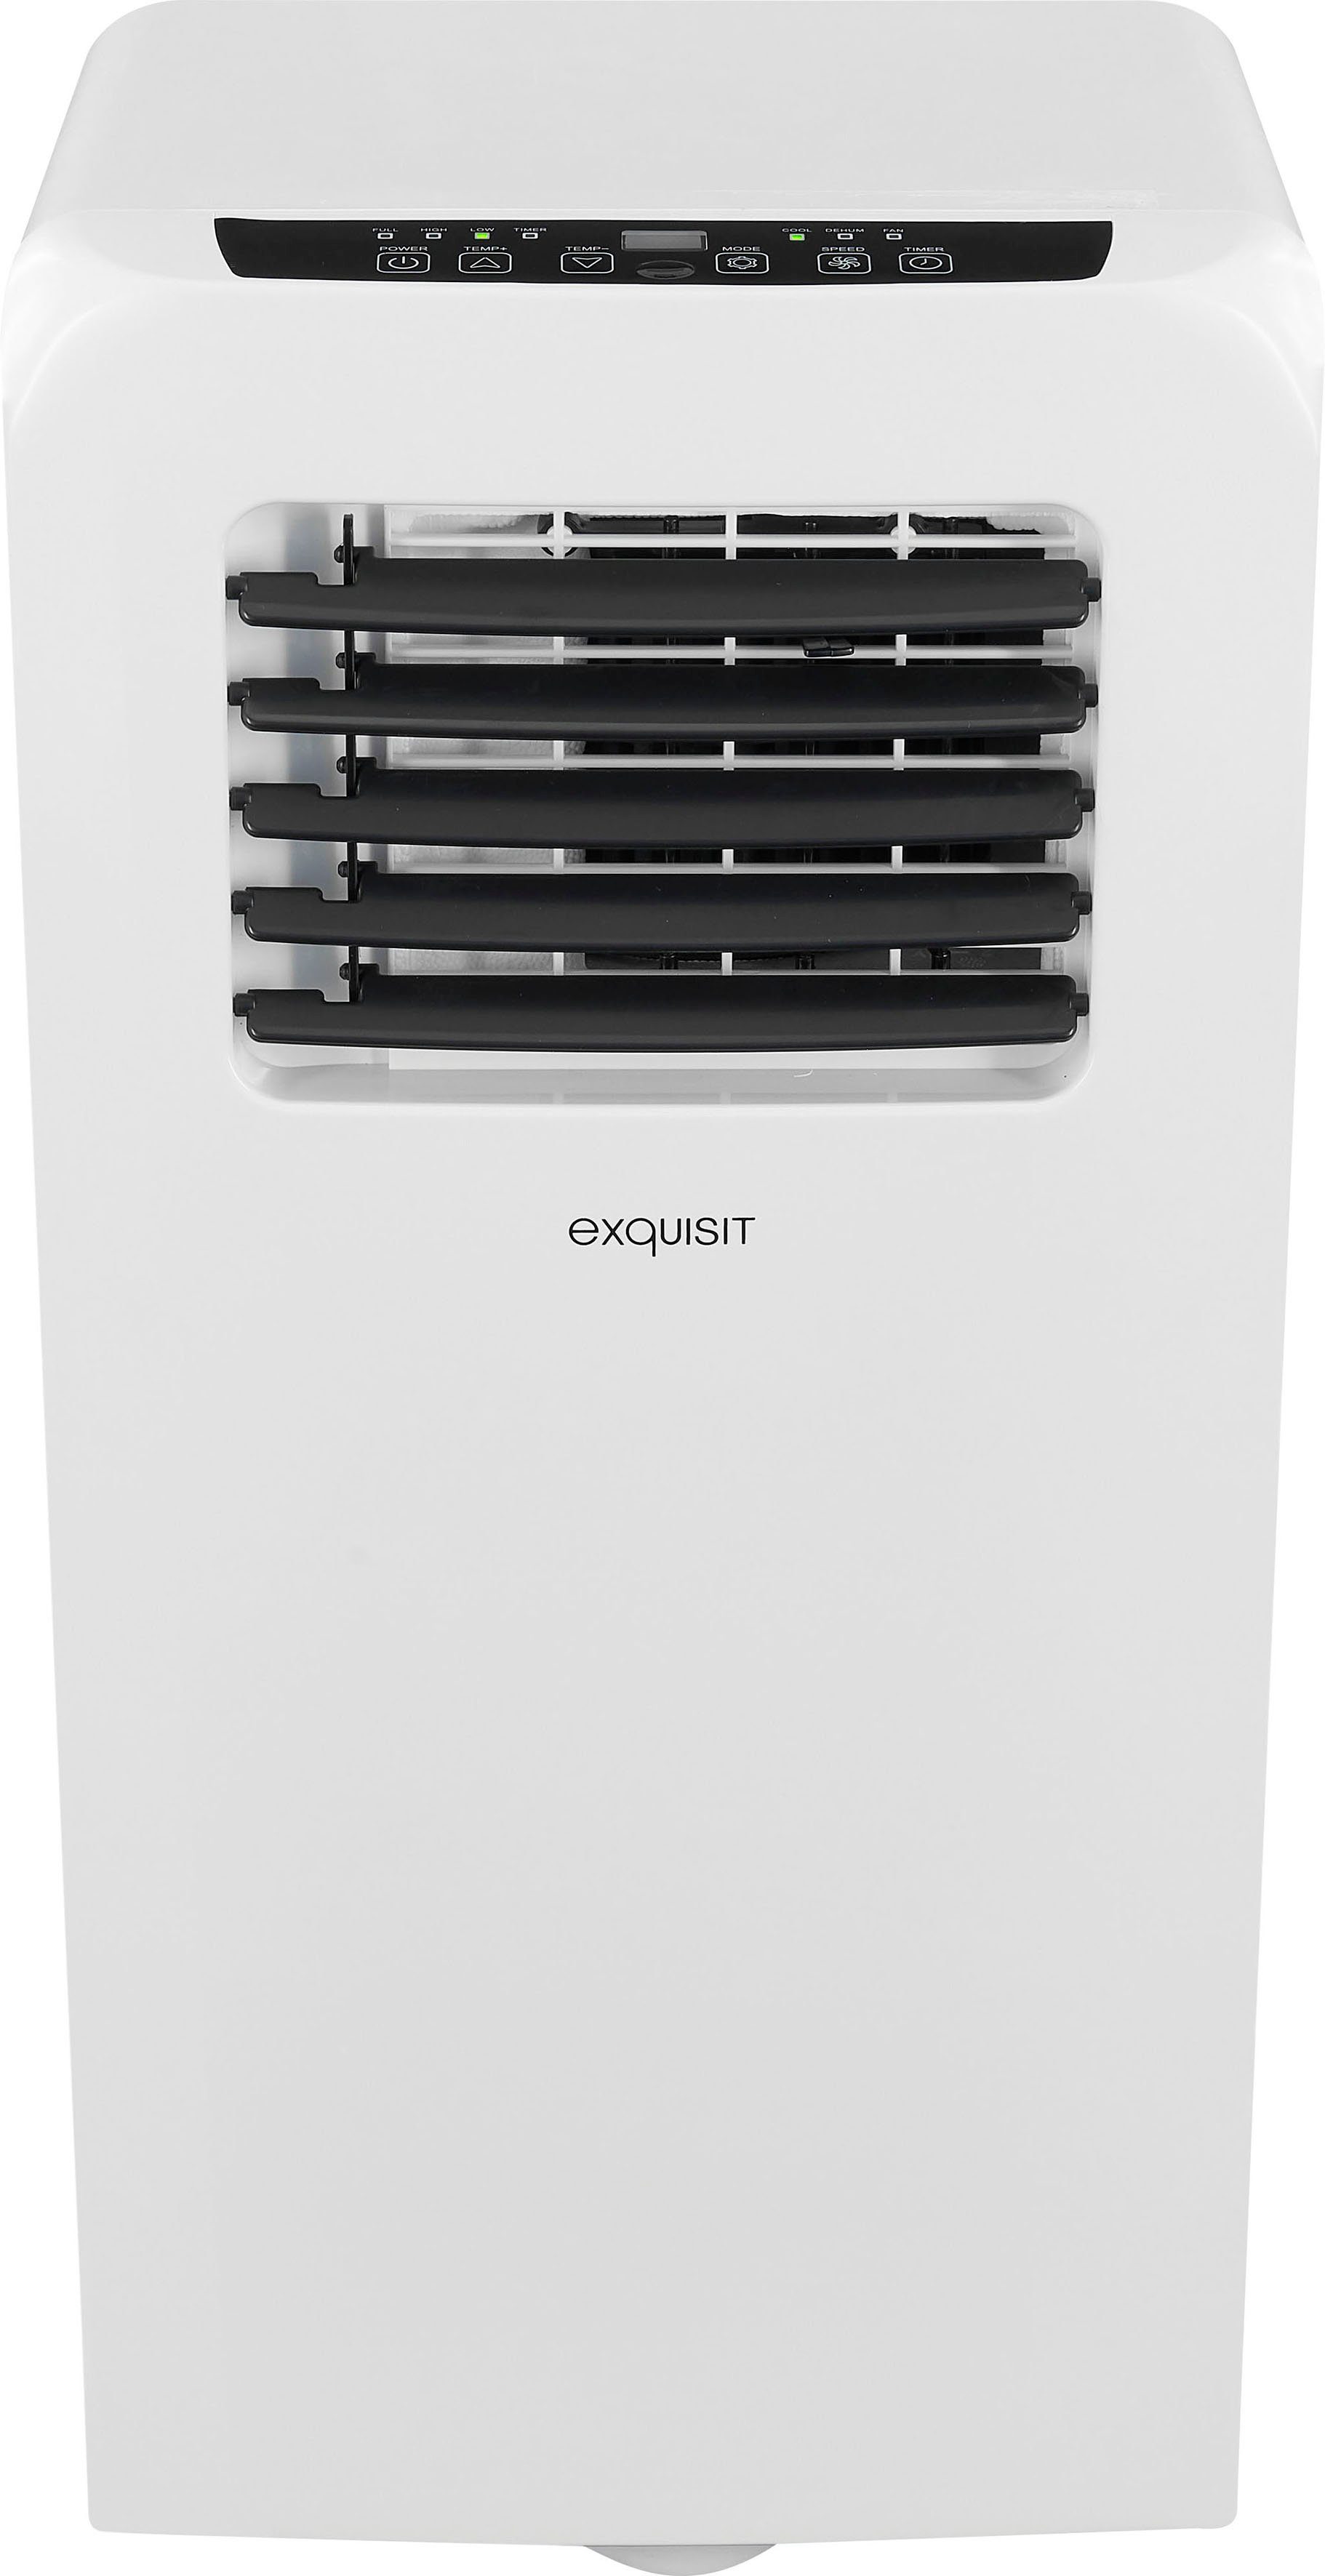 CM 20 geeignet m² Ventilation, we, Entfeuchtung für 30752 - exquisit 3-in-1-Klimagerät Luftkühlung Räume -